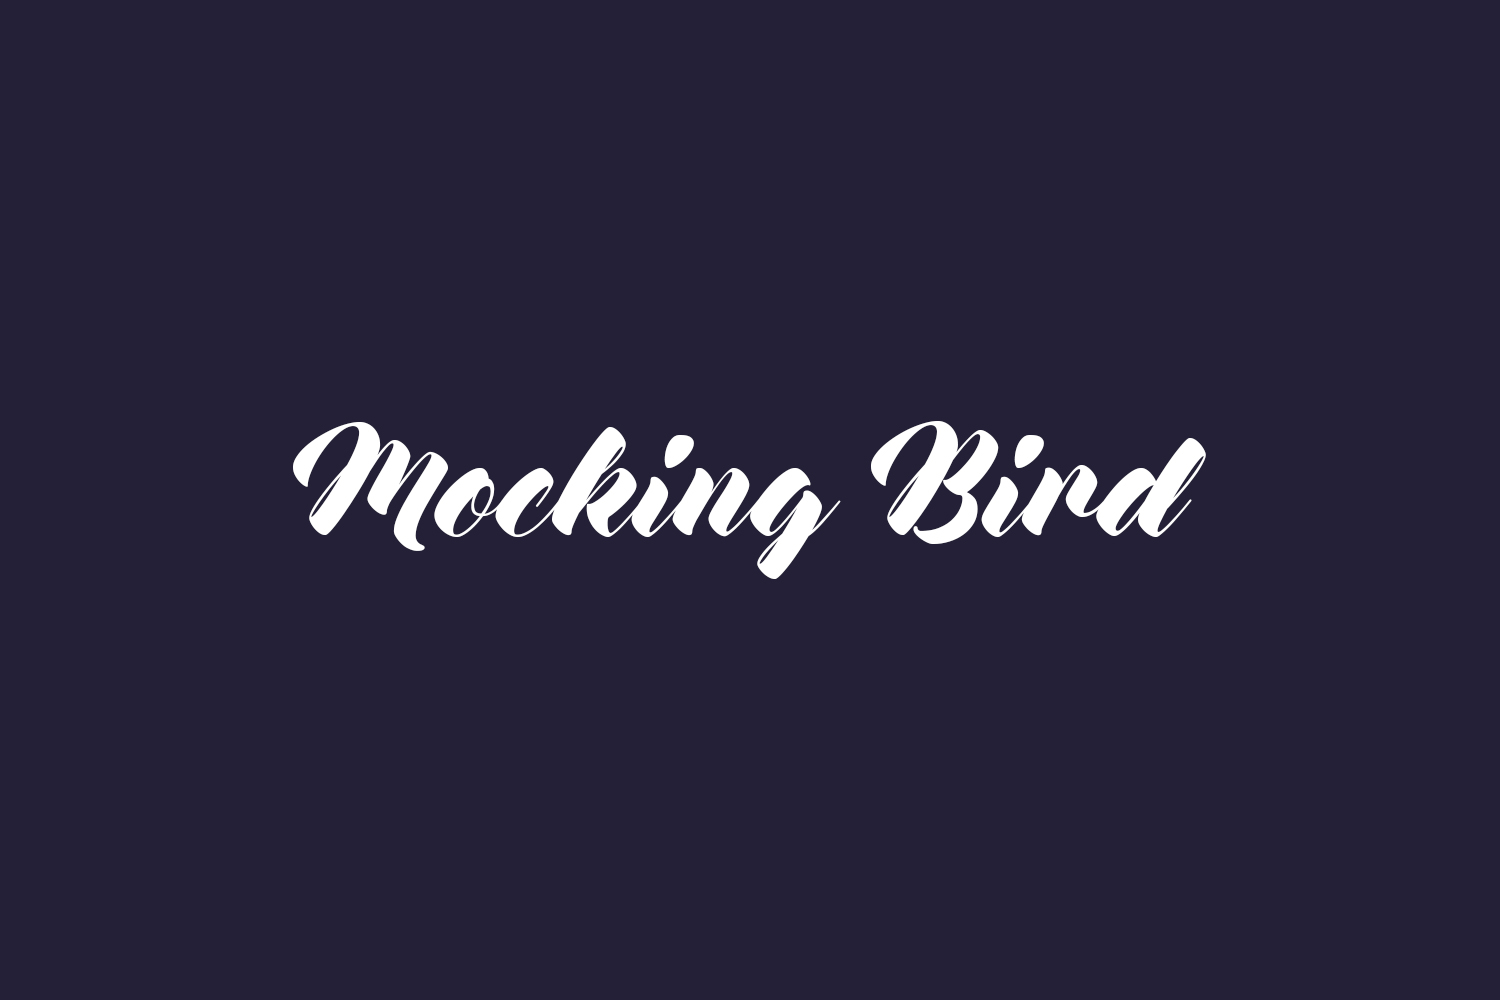 Mocking Bird Free Font